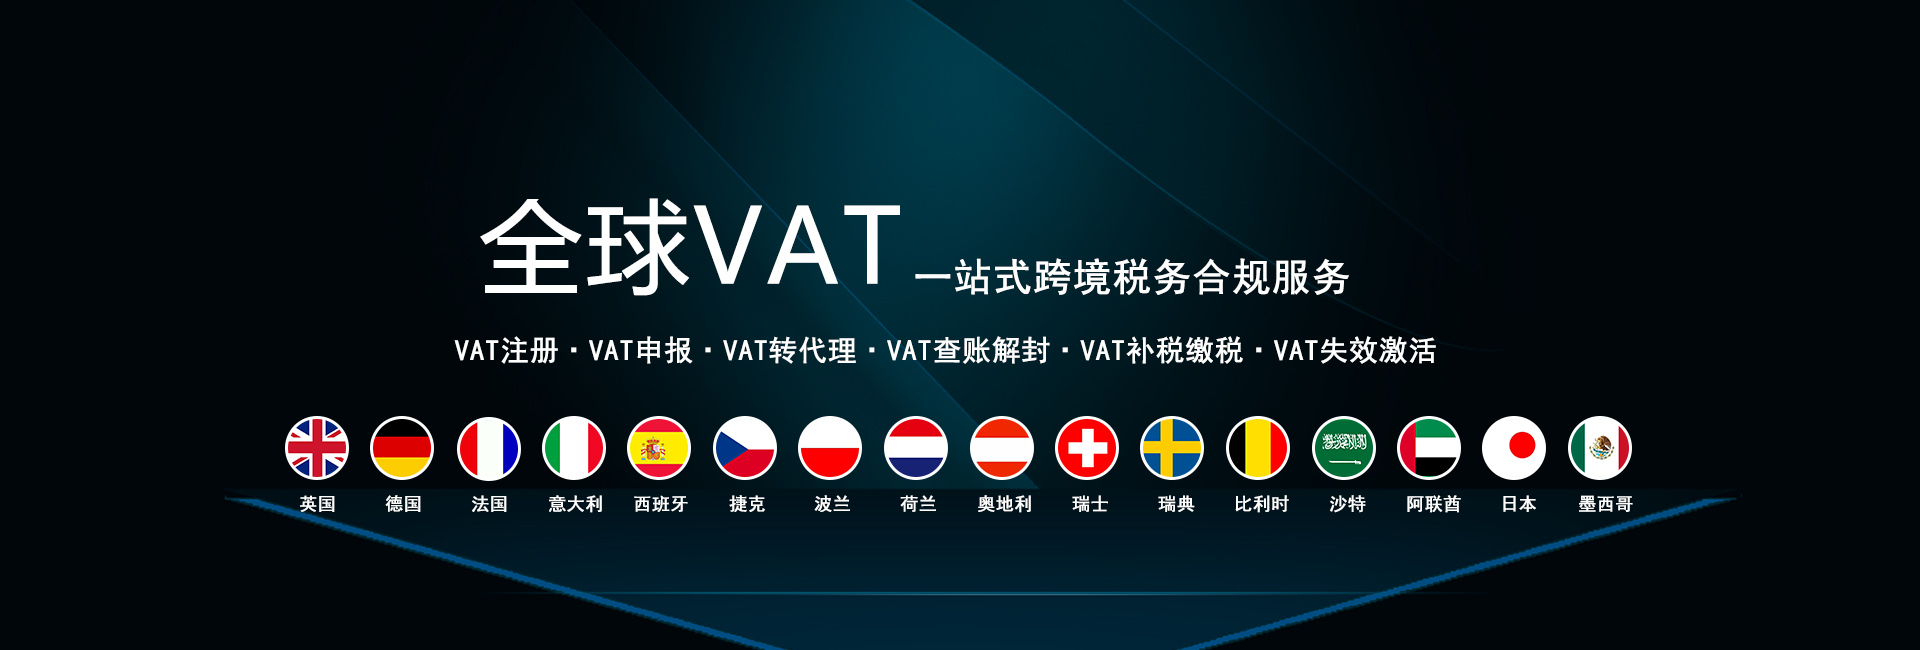 全球VAT注册